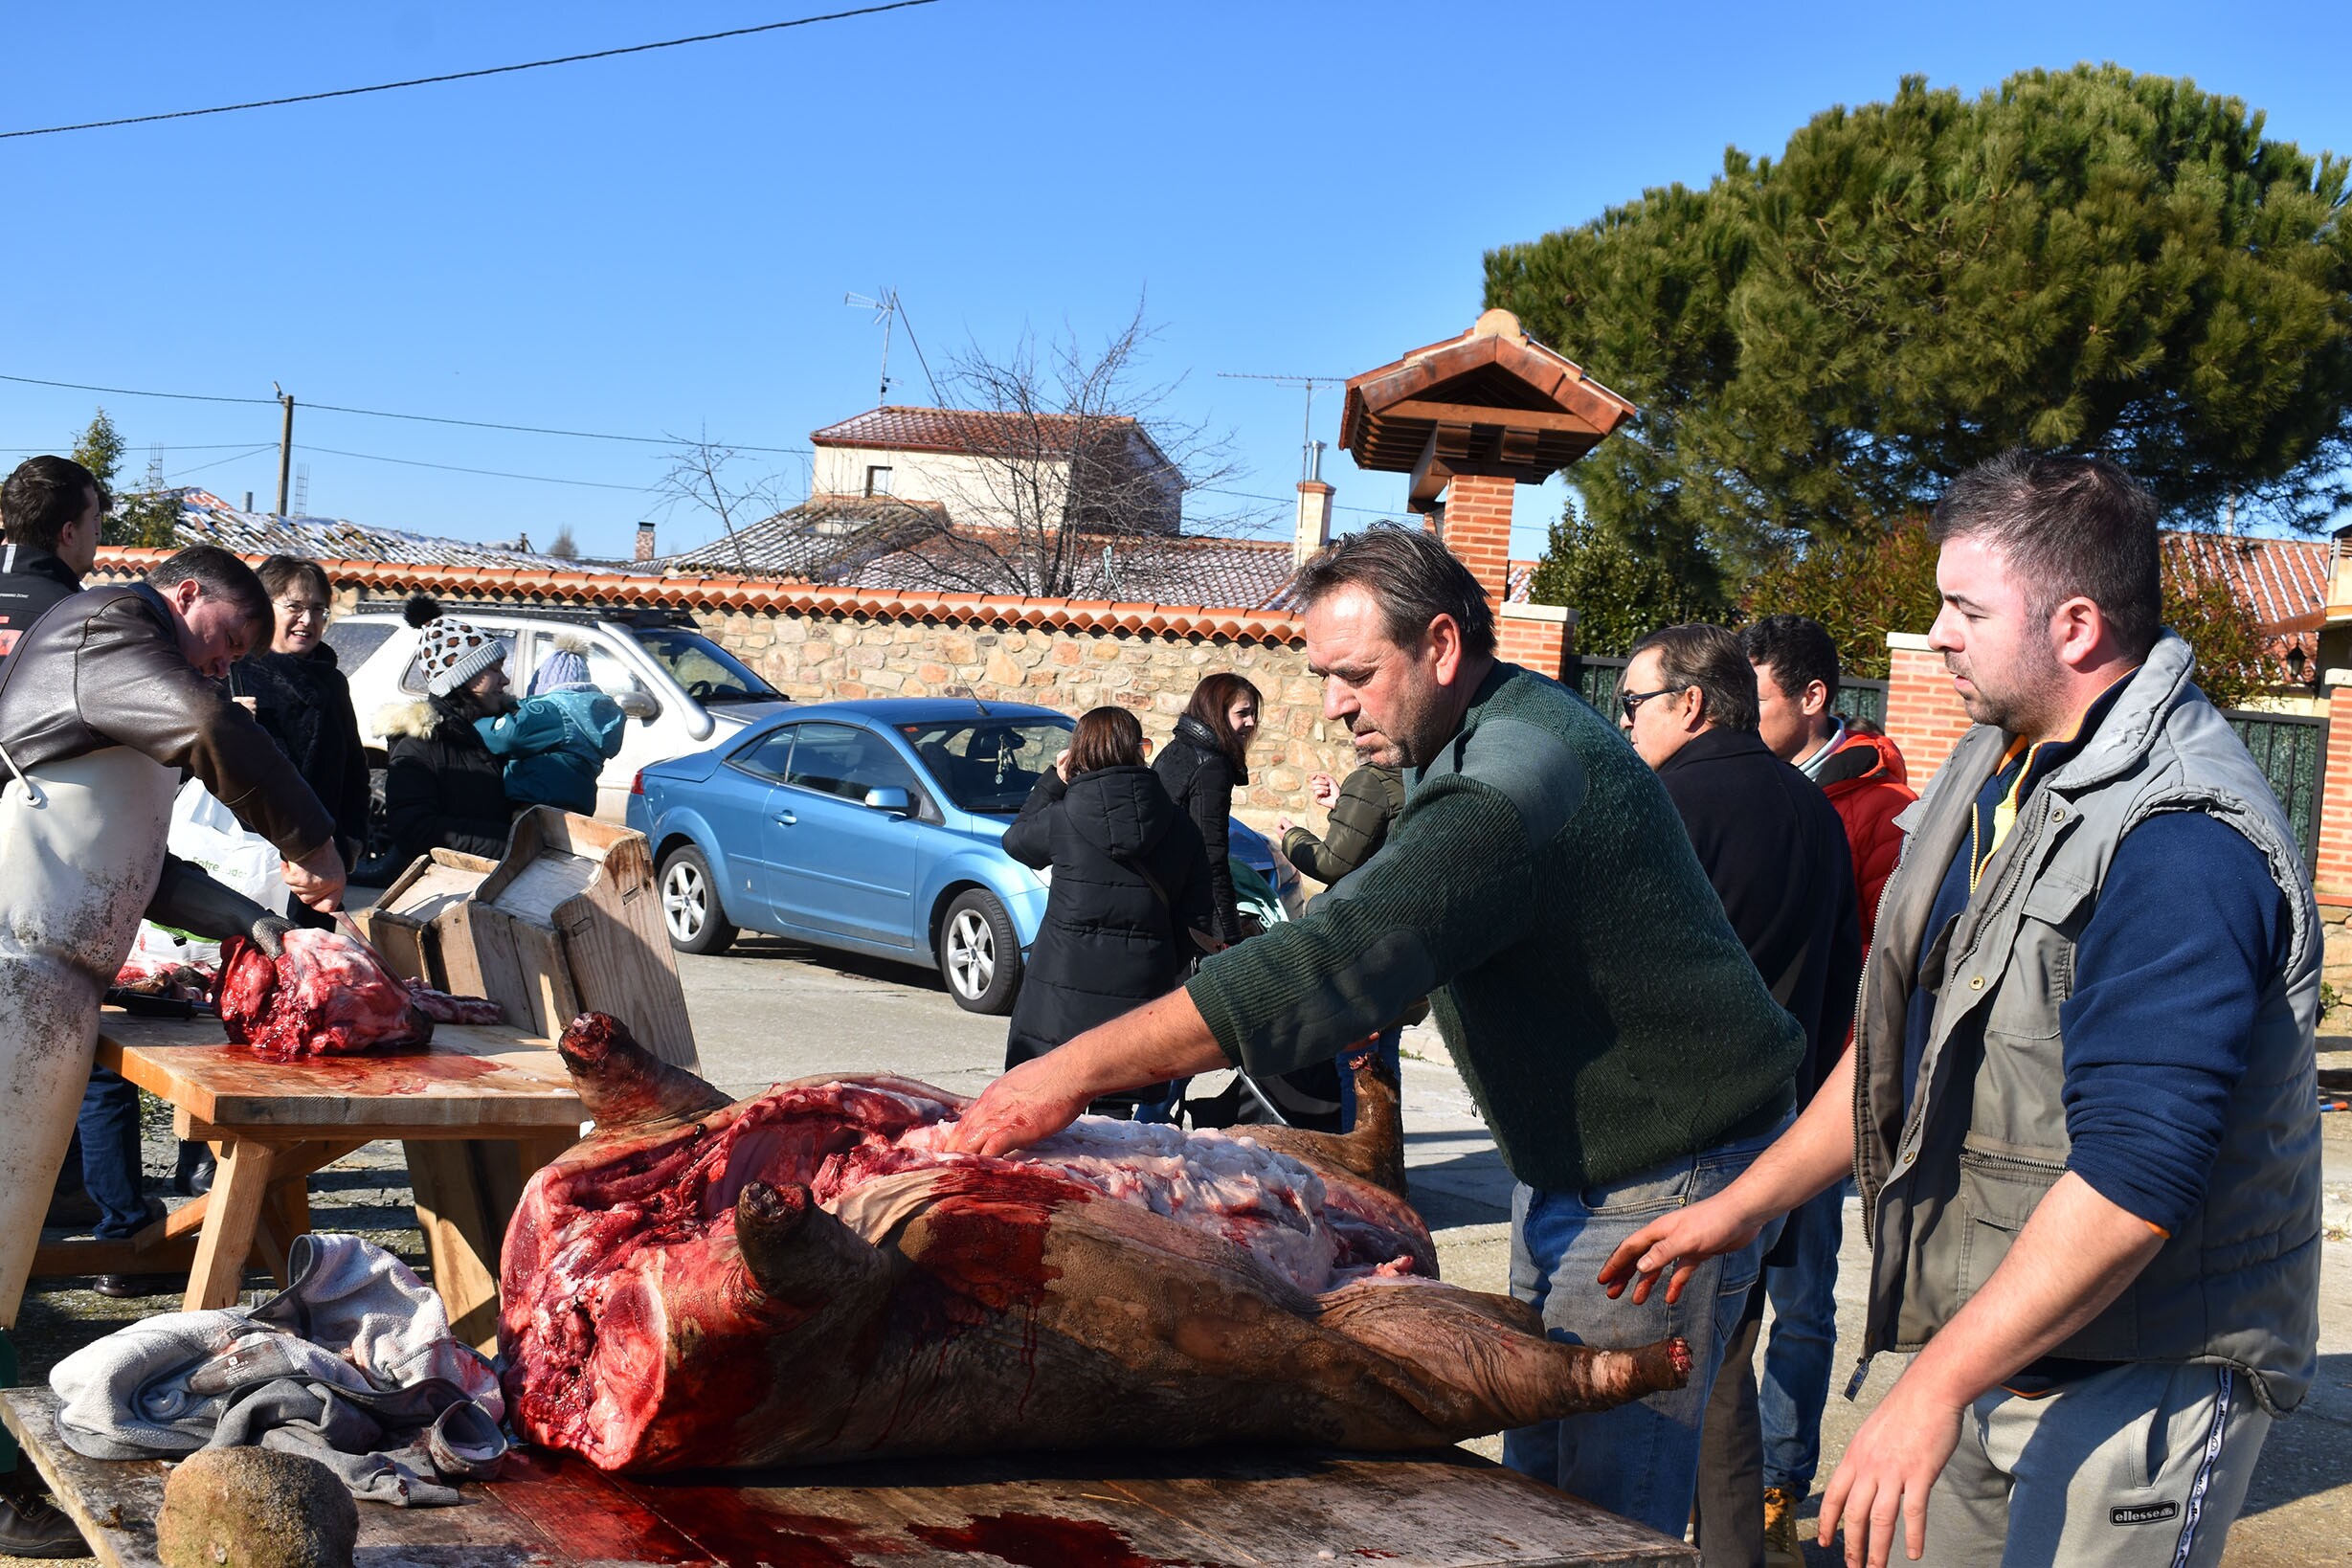 Día de convivencia en torno al sacrificio del cerdo en Martinamor